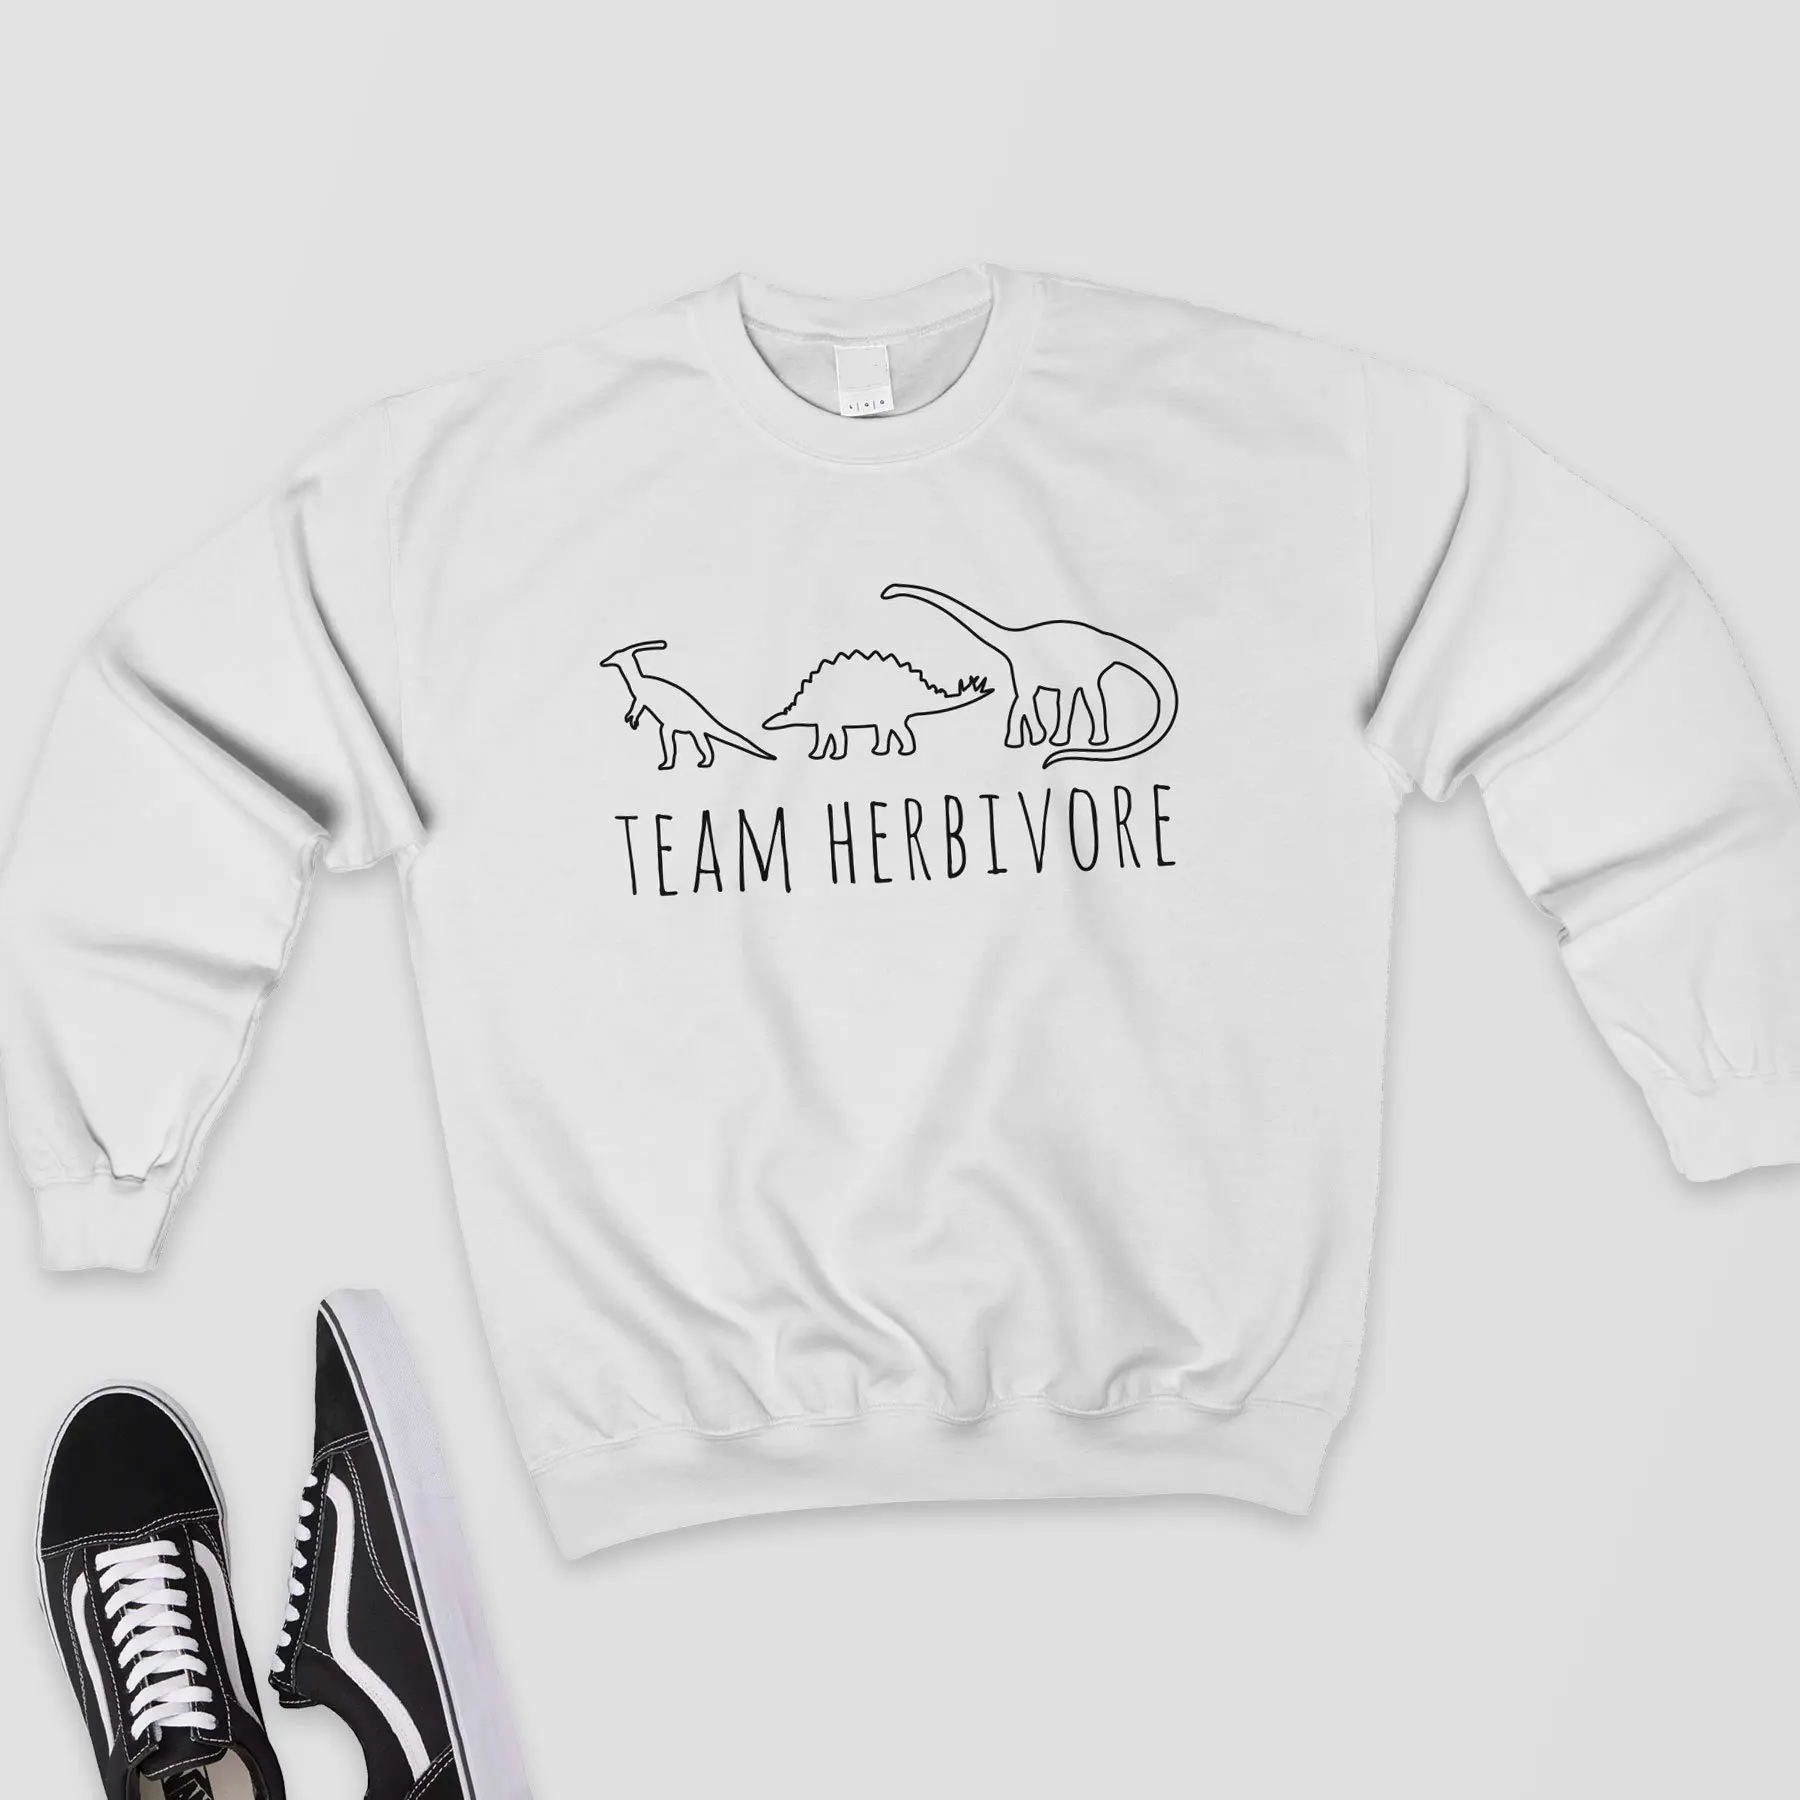 Team Herbivore, толстовка, женские Графические Топы, Harajuku, джемпер, веганская рубашка, Вегетарианская рубашка с динозаврами, толстовки, готические пуловеры - Цвет: Белый